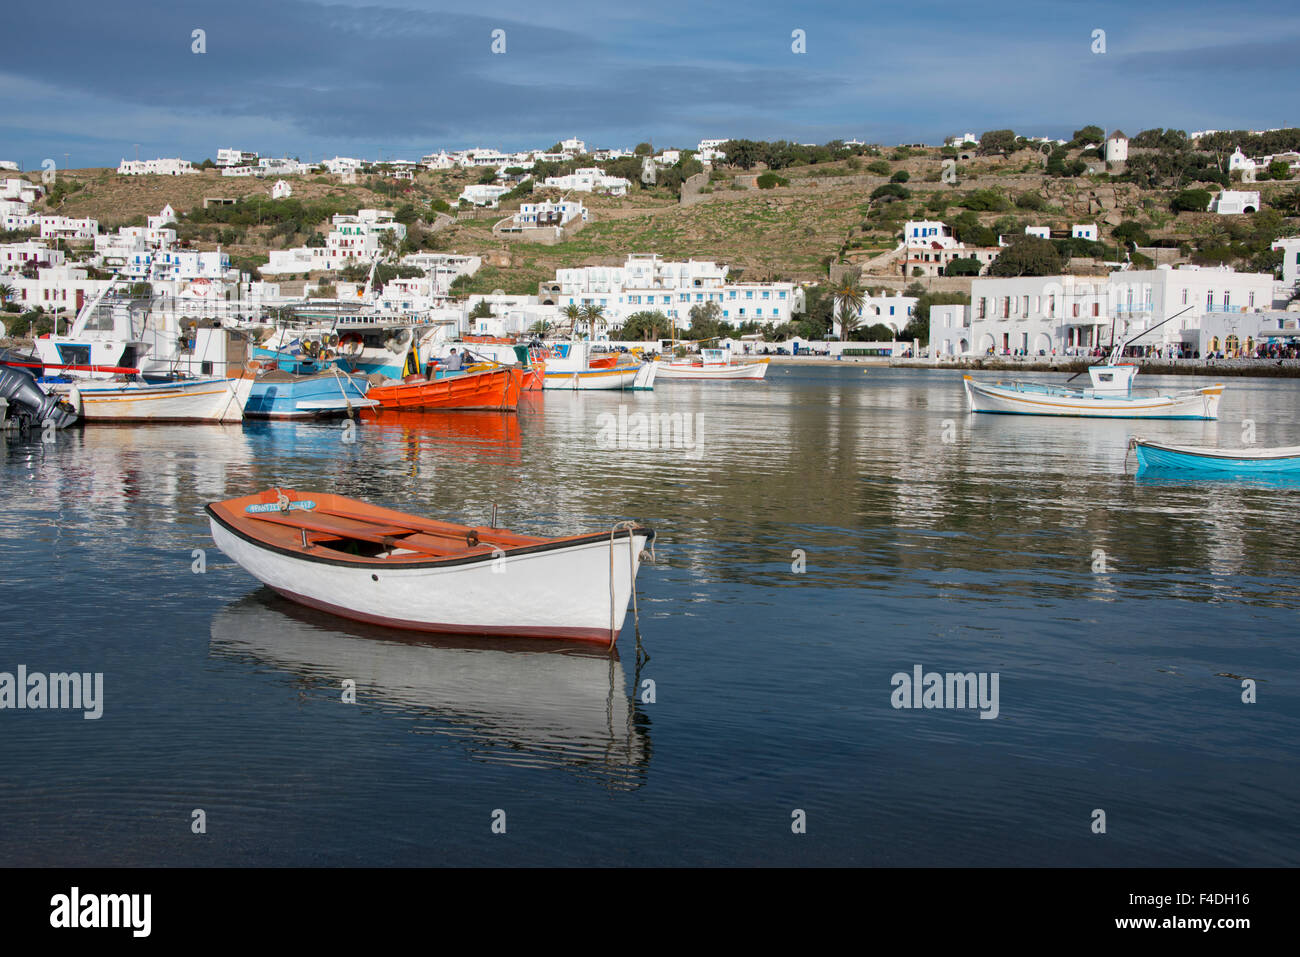 Grèce, les Cyclades, Mykonos, Hora. Port et le quartier du port avec bateaux de pêche grec. Campagne de l'île et les pêcheurs locaux dans la distance. Tailles disponibles (grand format). Banque D'Images